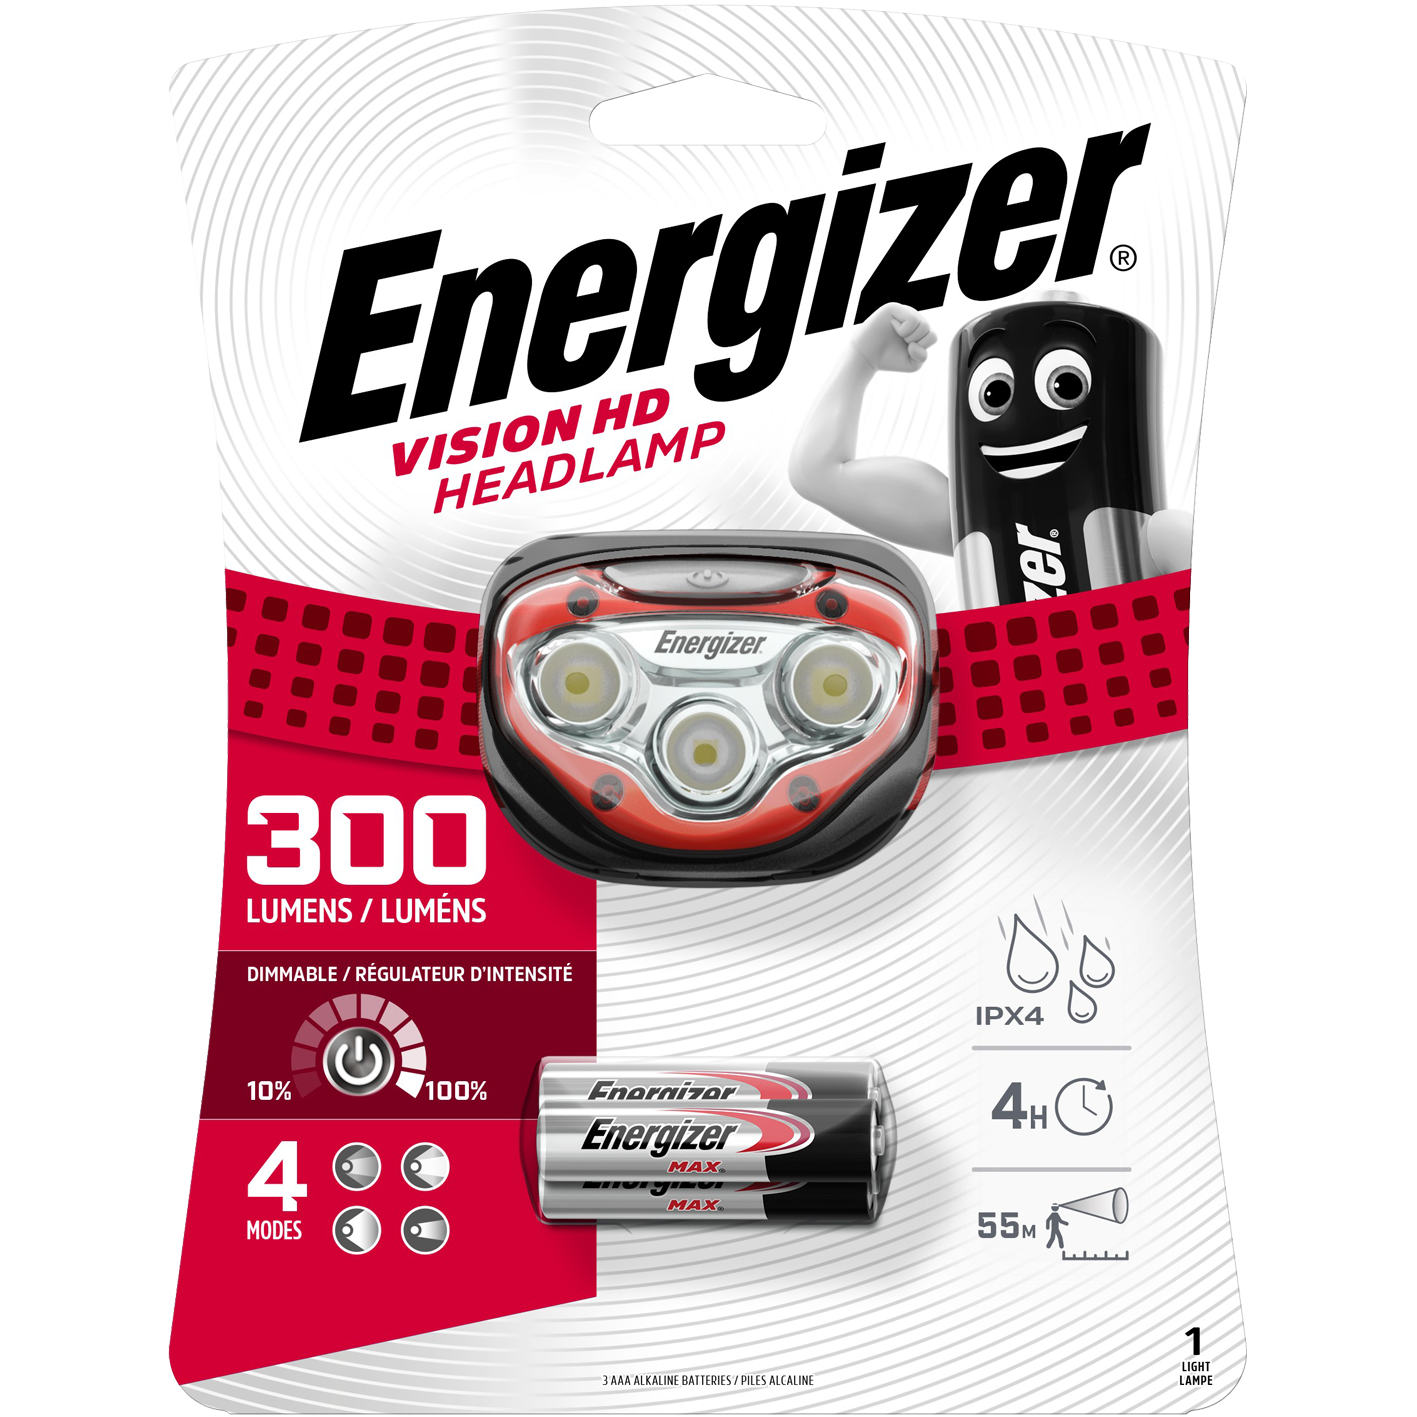 Energizer Vision HD 300 Lumen Stirnlampe mit 3 x AAA-Batterien